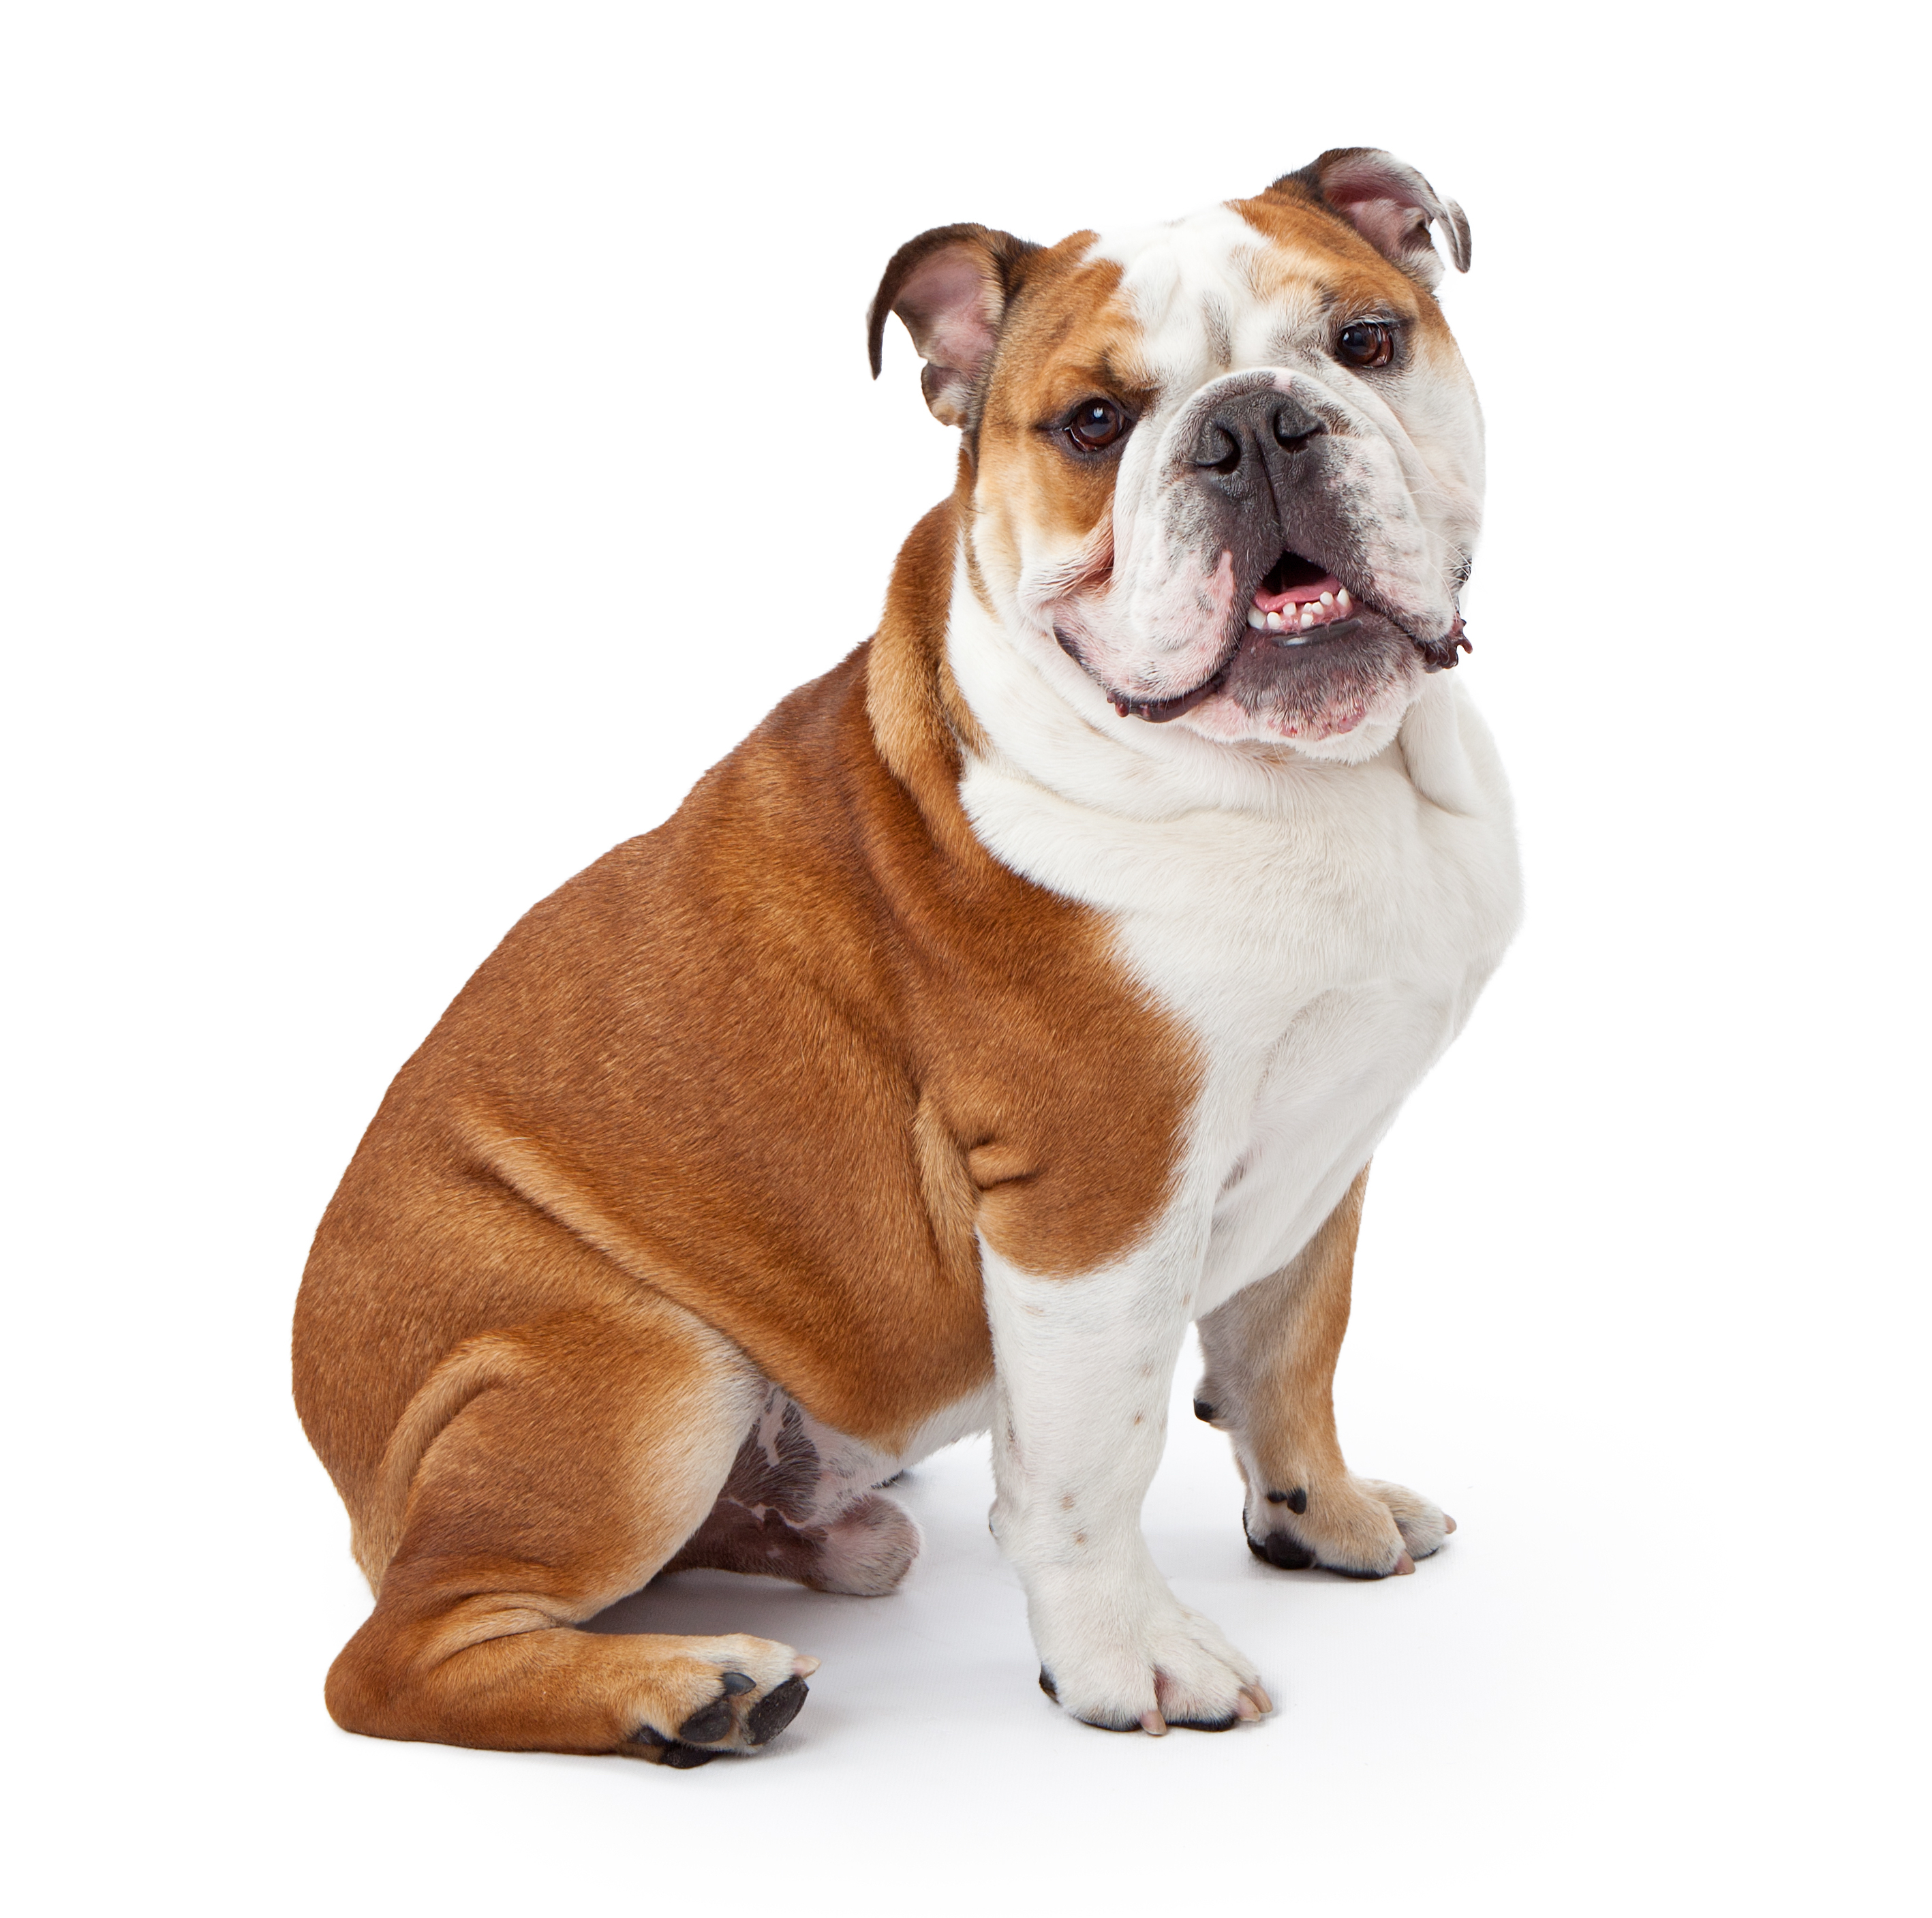 English Bulldog- History, Facts, And Personality Traits